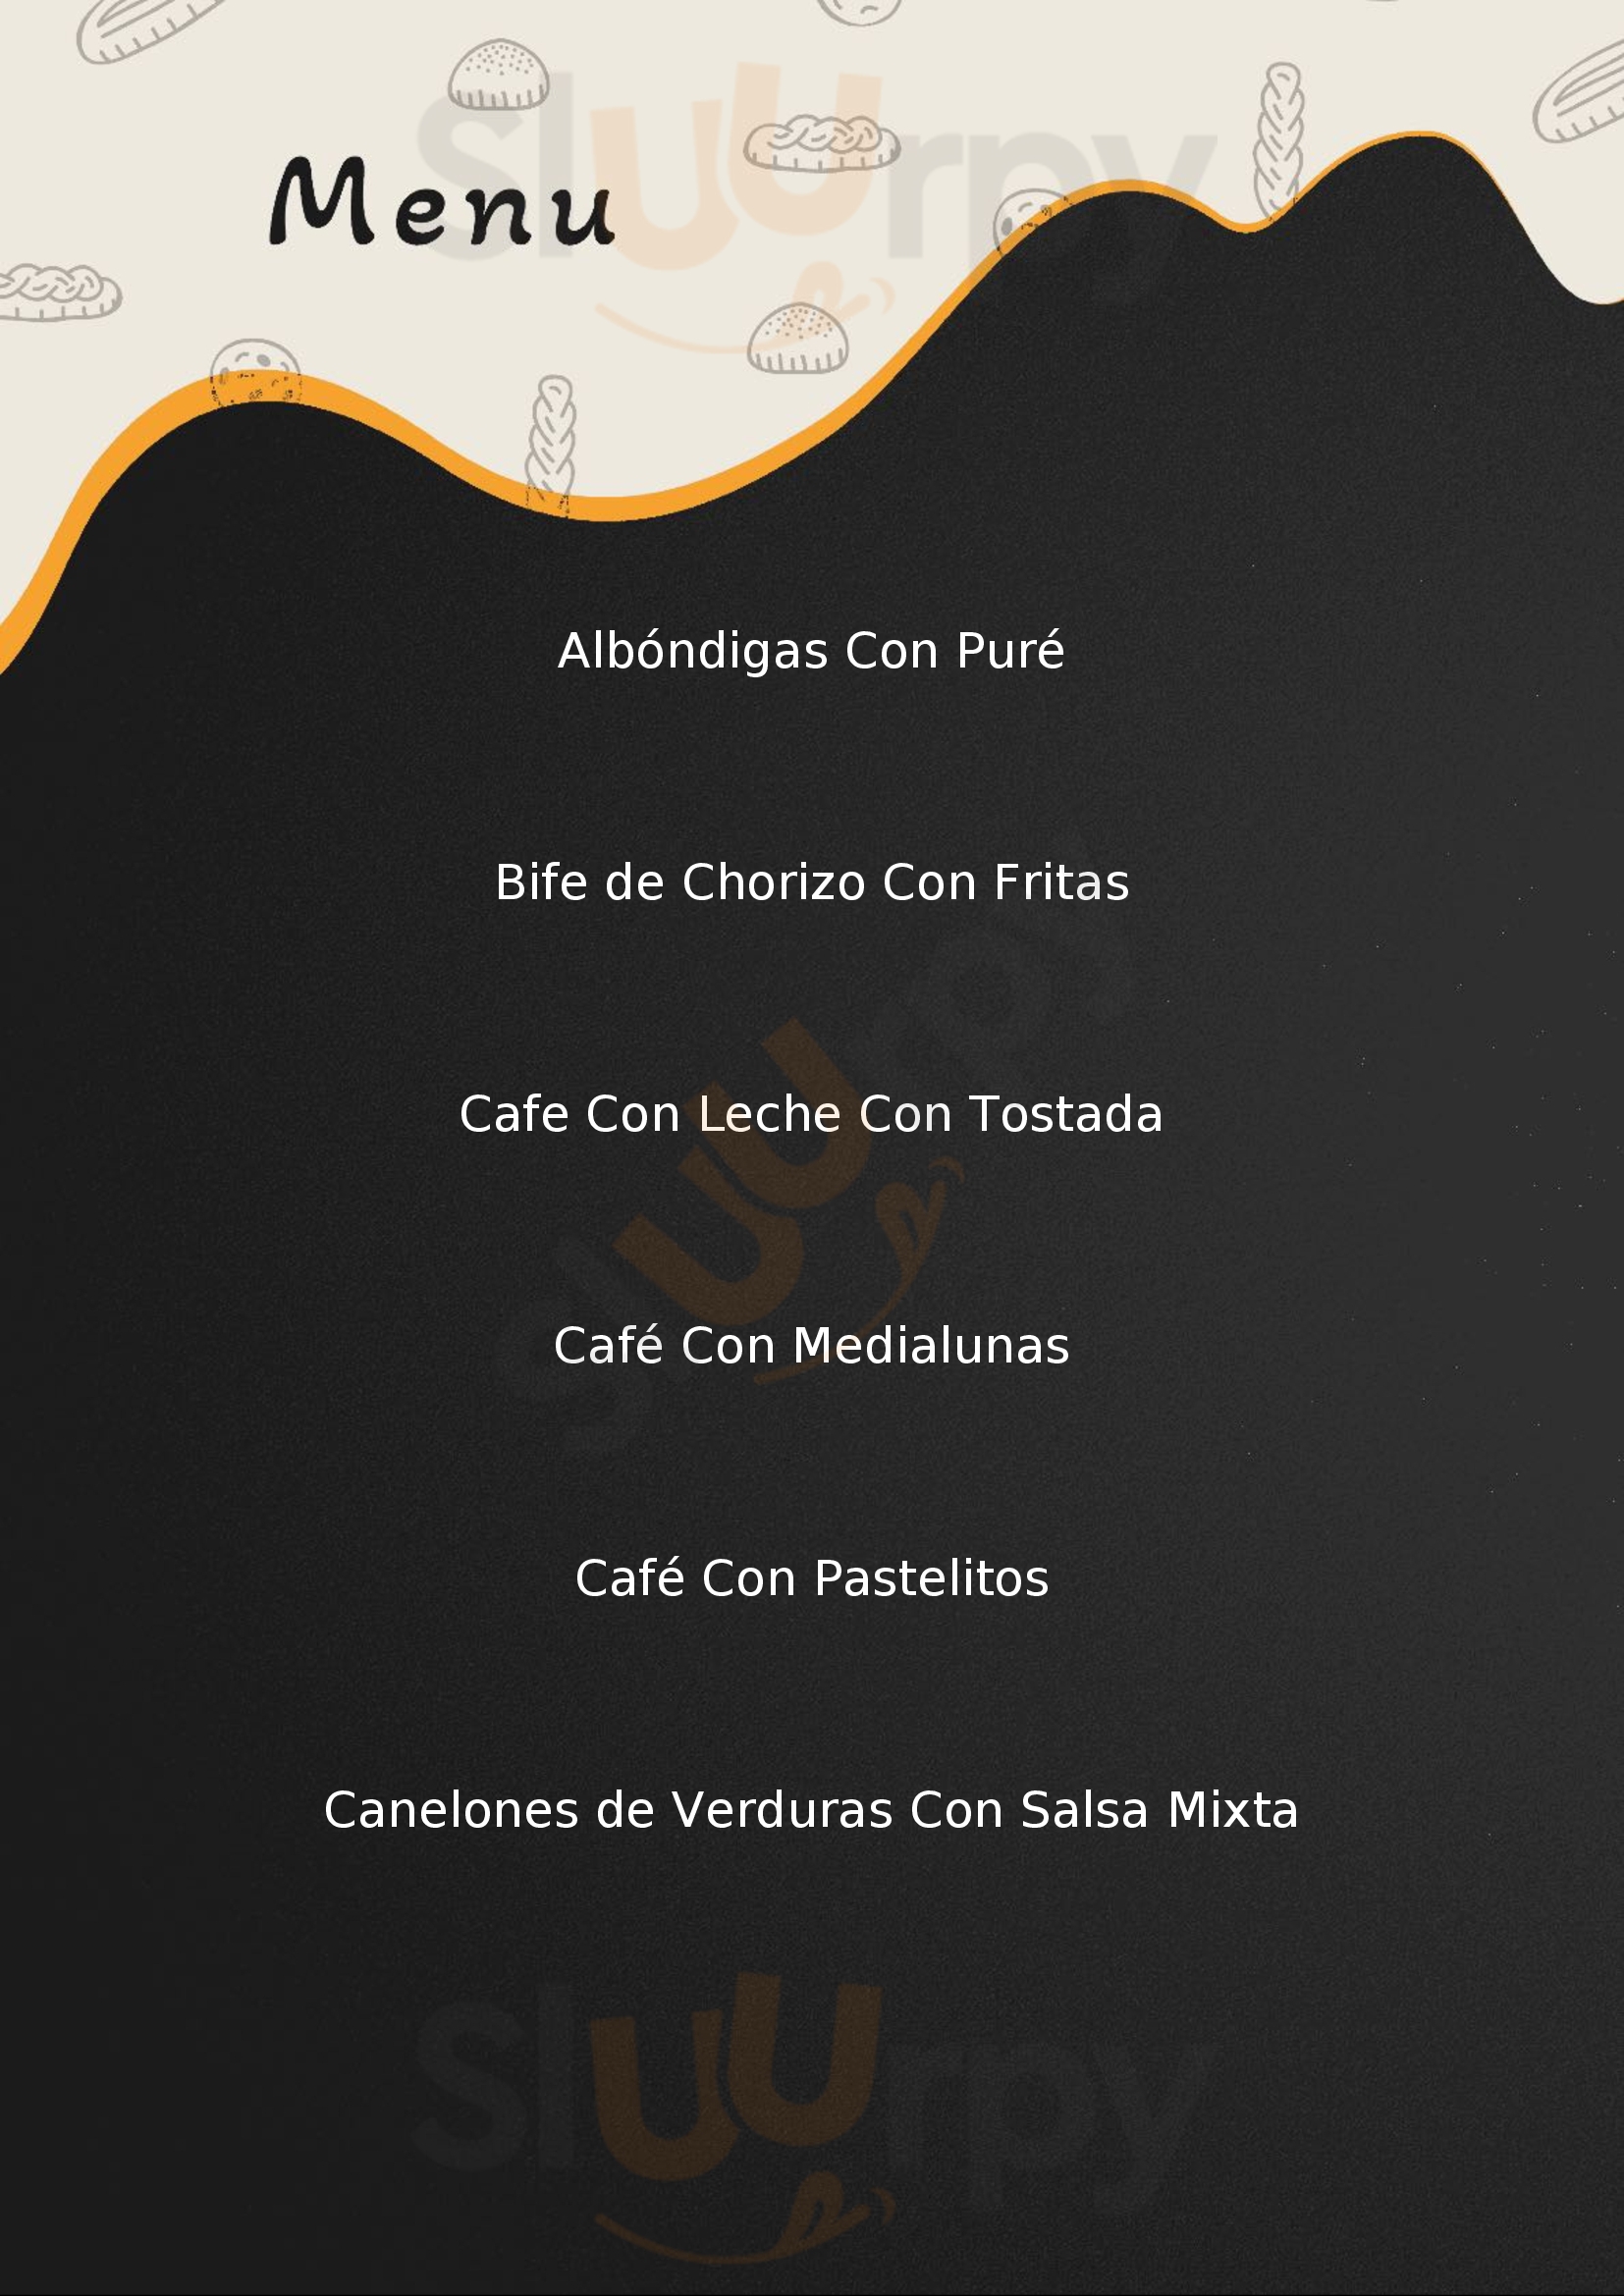 Cafe Savoy Buenos Aires Menu - 1